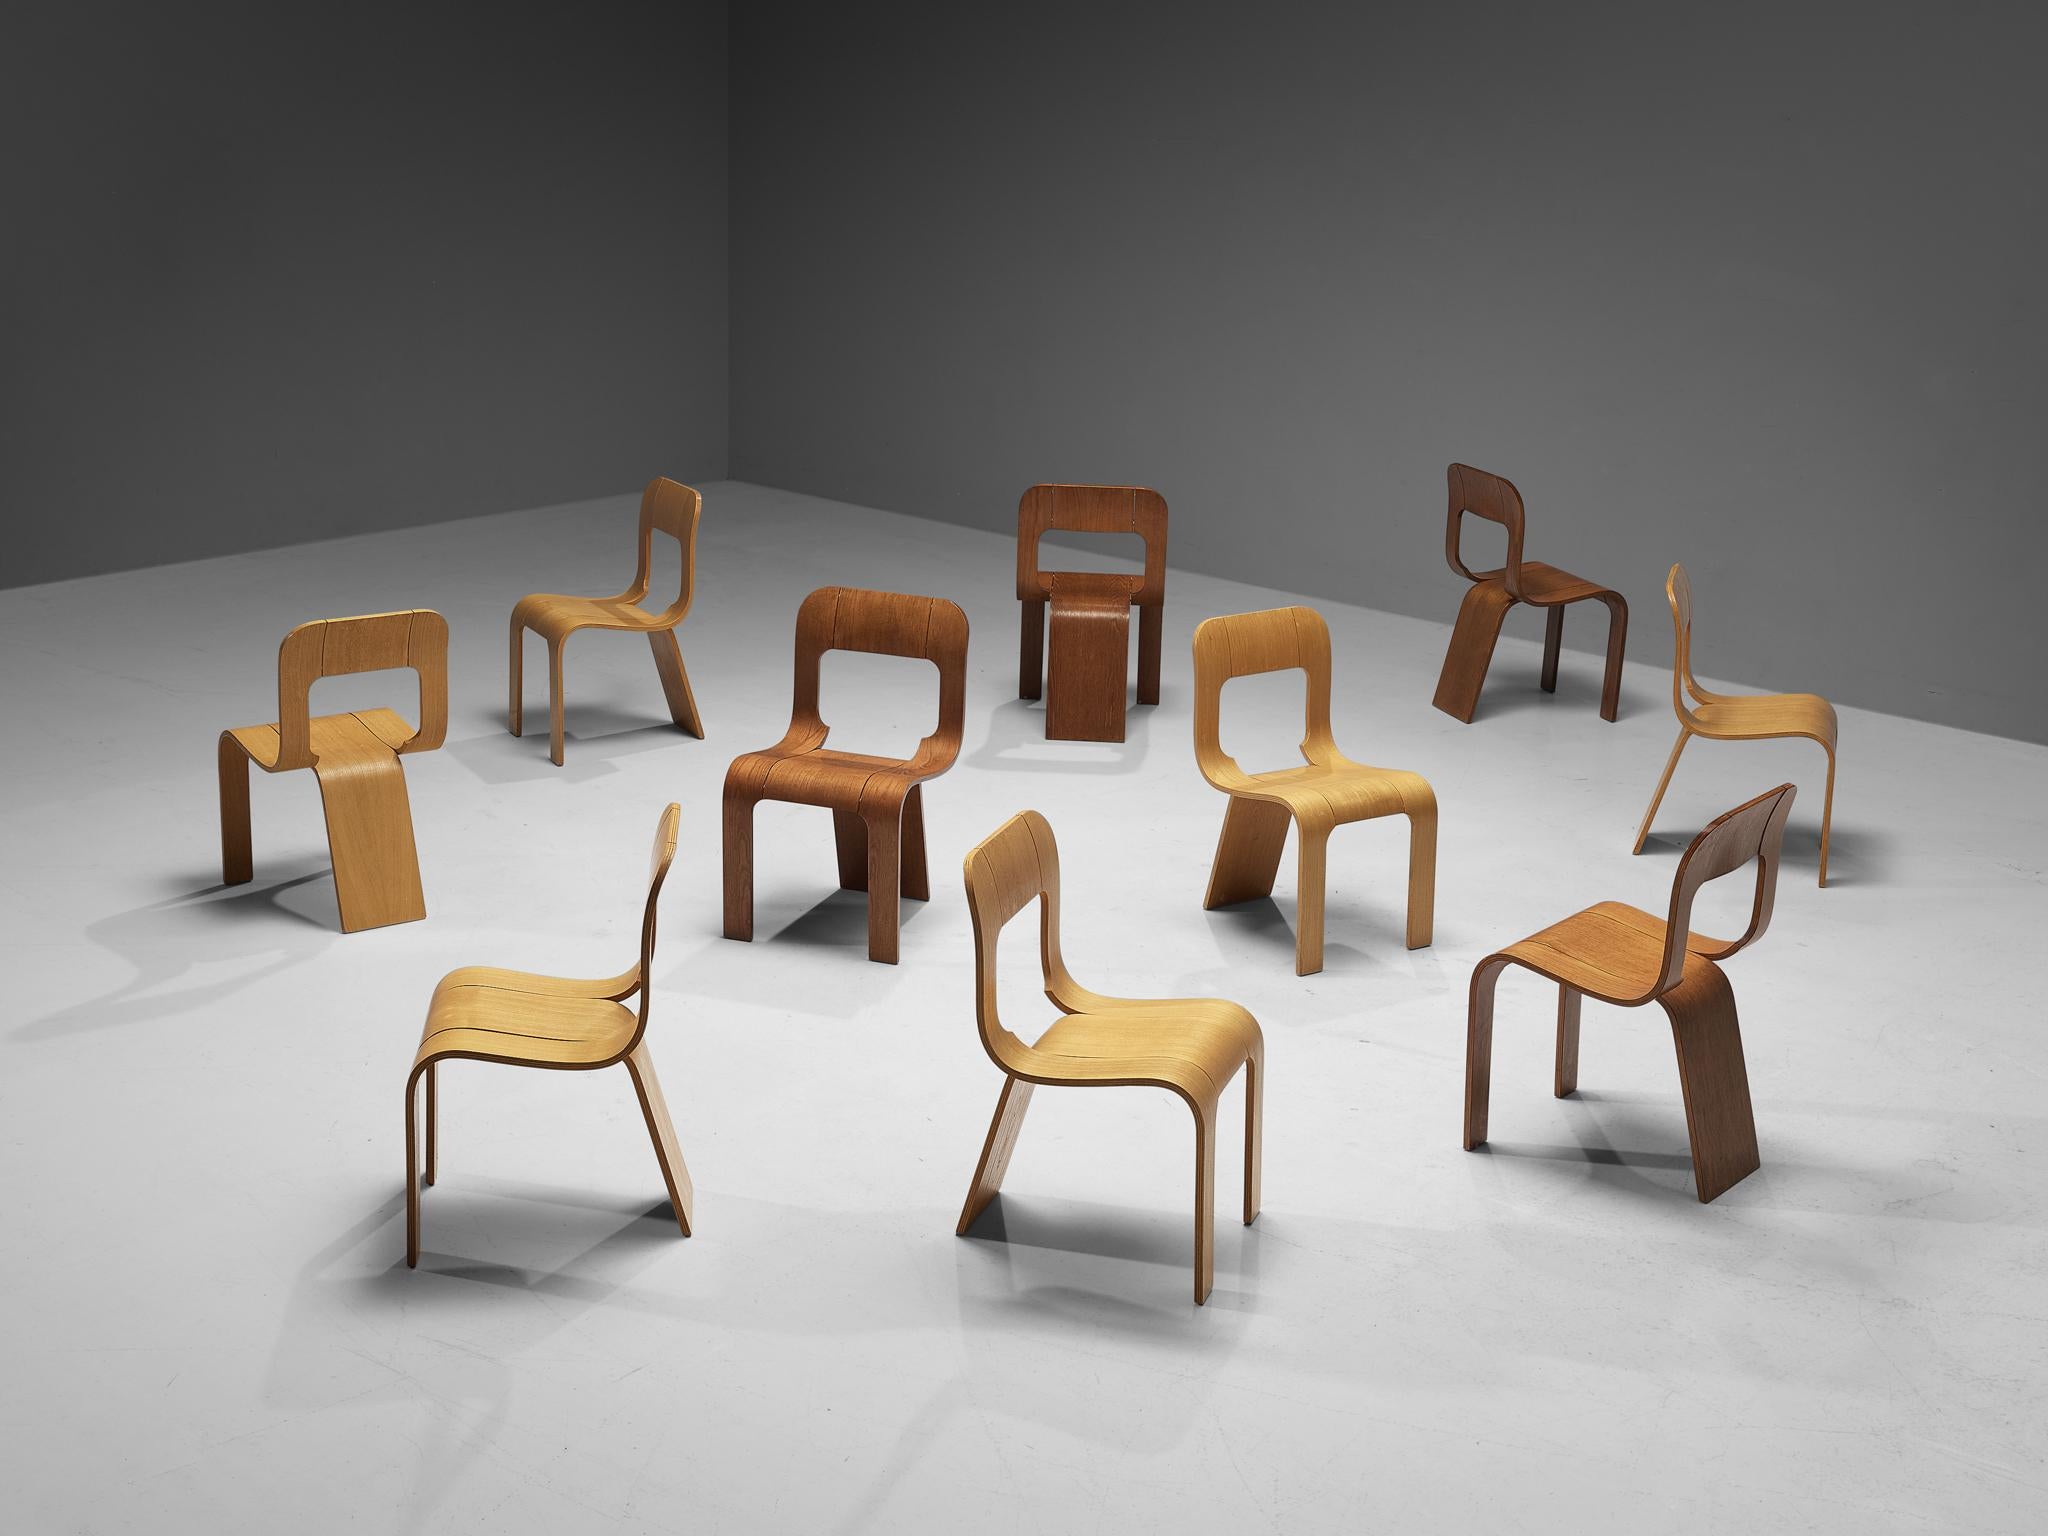 Gigi Sabadin pour Stilwood, ensemble de dix chaises, contreplaqué de frêne, Italie, années 1970.

Design inventif de l'Italien Gigi Sabadin, ces chaises sont fabriquées en contreplaqué de frêne cintré avec une finition plaquée. Le design organique